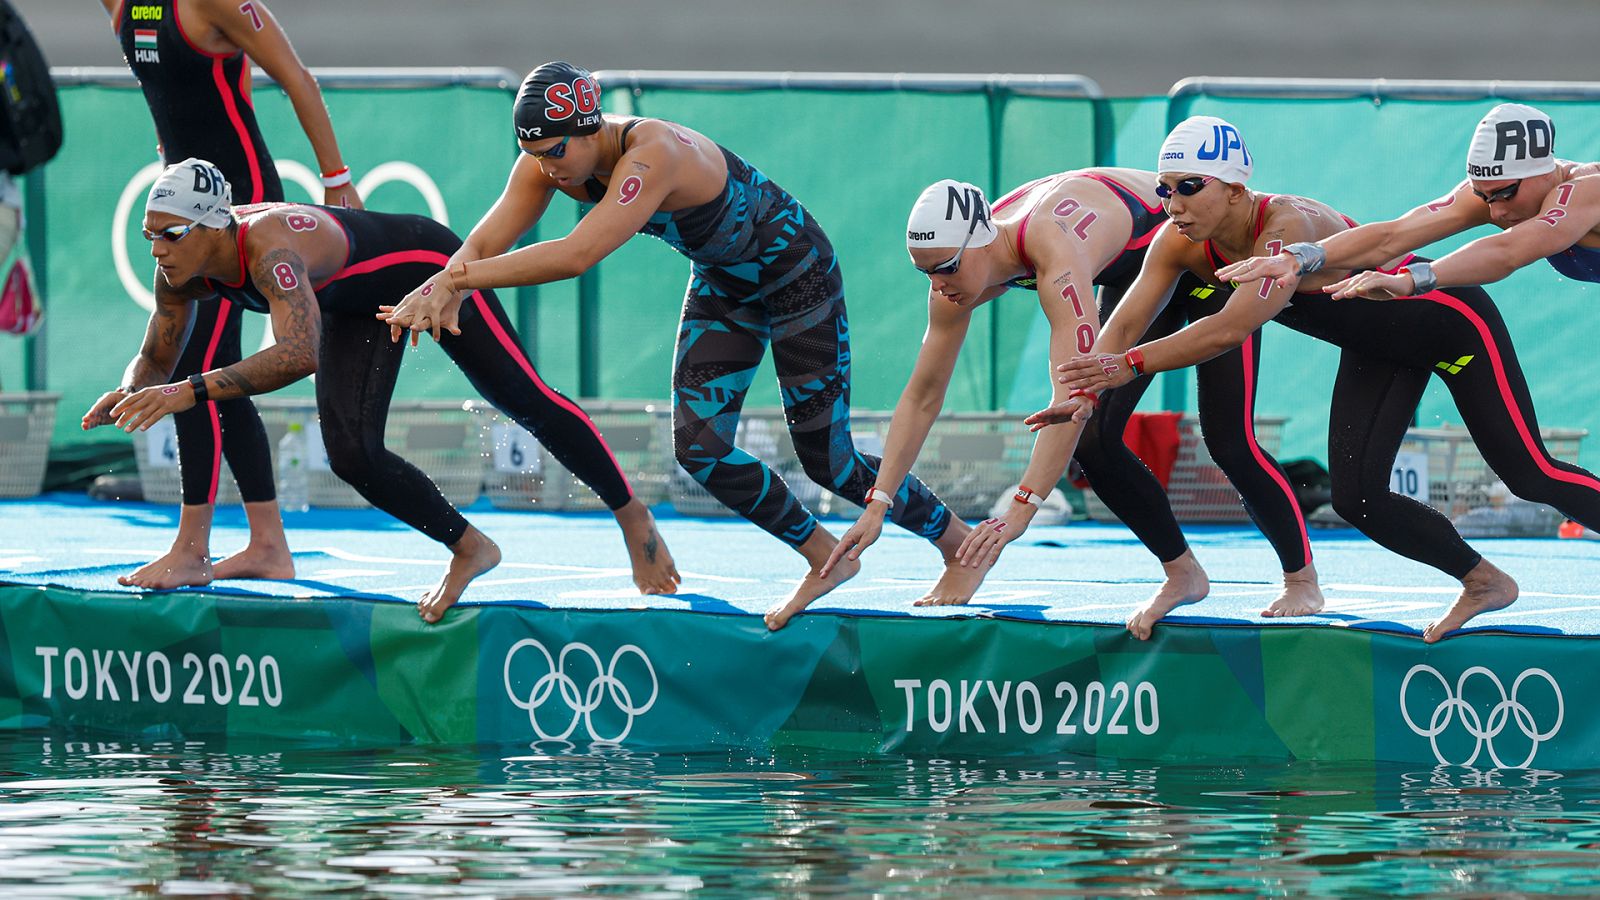 Aguas abiertas femenino: 10 km | Tokio 2020